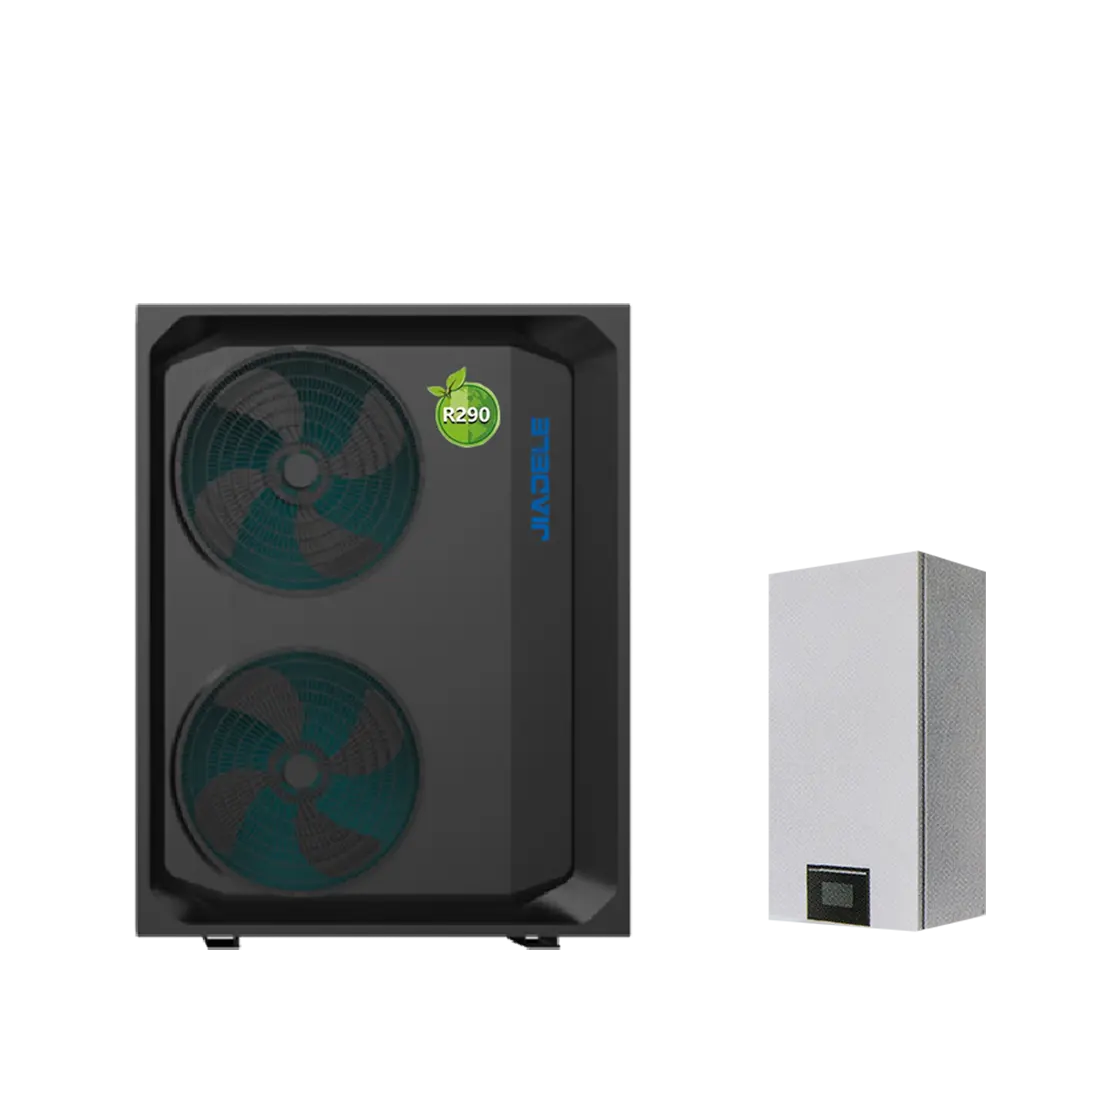 R290 Luft-Wärmepumpe Luft-Wasser 85oC geteilte Wärmepumpe Klimaanlage Hochtemperatur-Wärmepumpe Warmwasserbereiter für -35oC